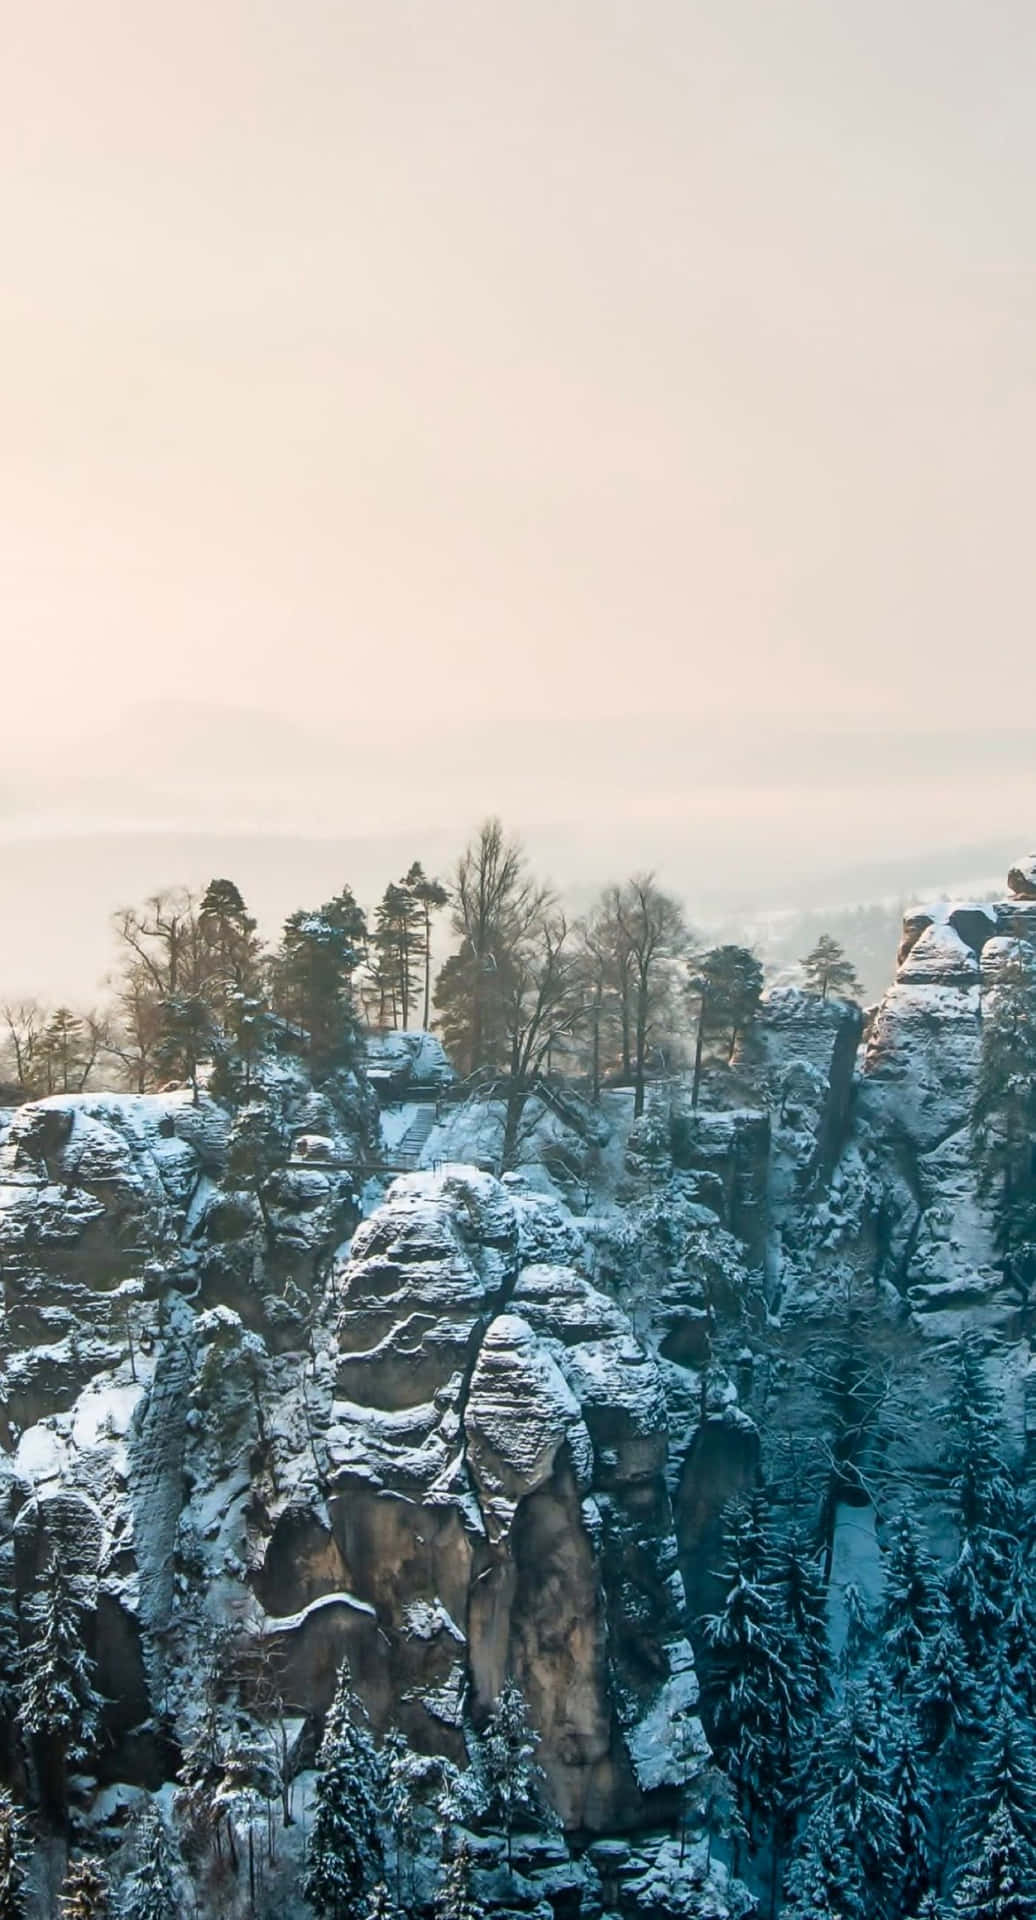 Einbildschöner Wintermorgenblick Auf Einem Iphone 6 Plus Wallpaper